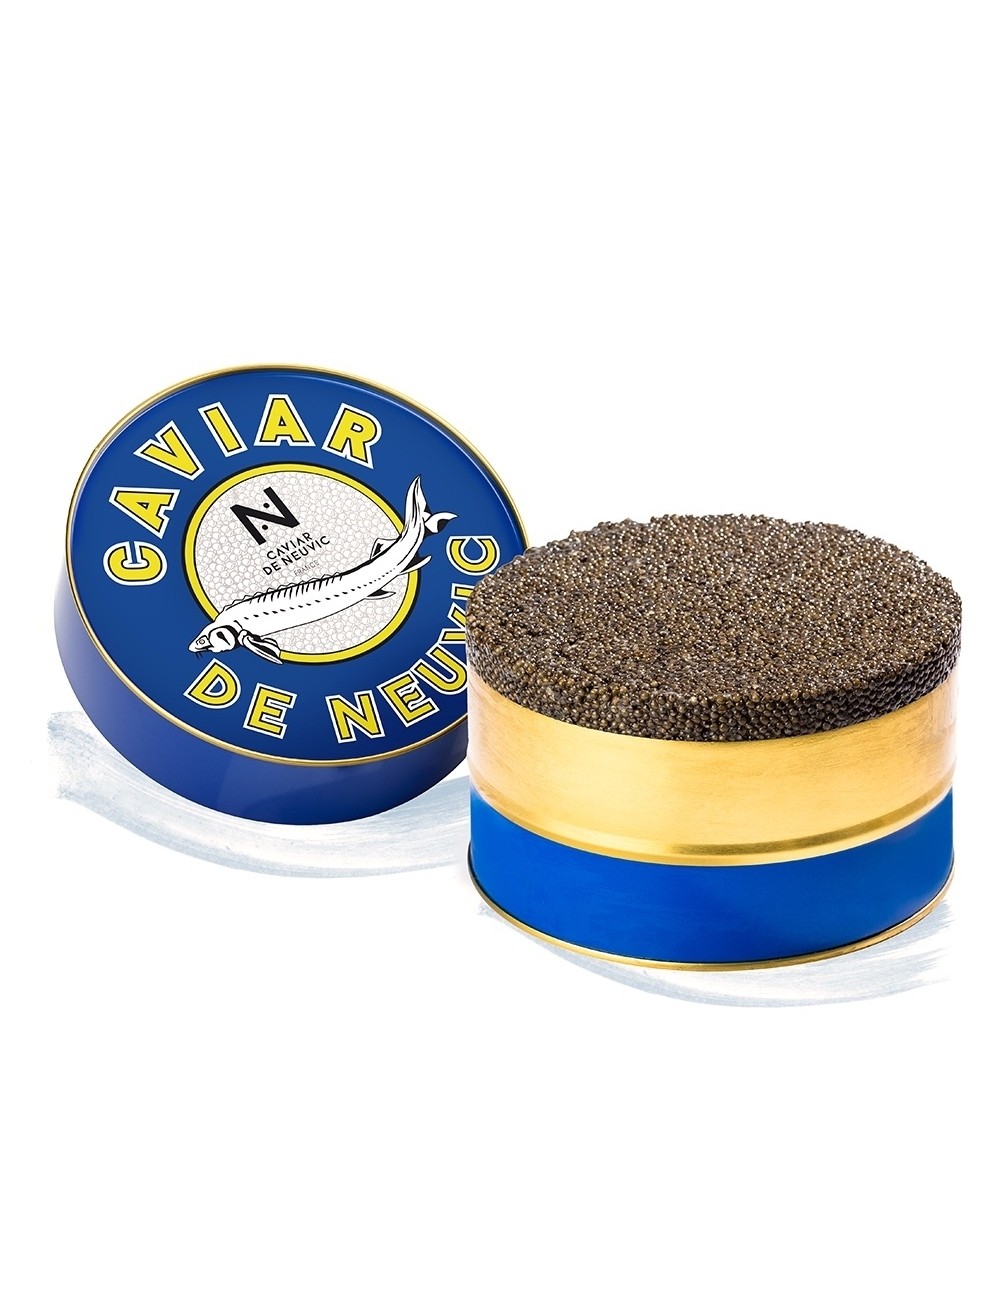 Caviar Beluga Réserve - Boite Origine